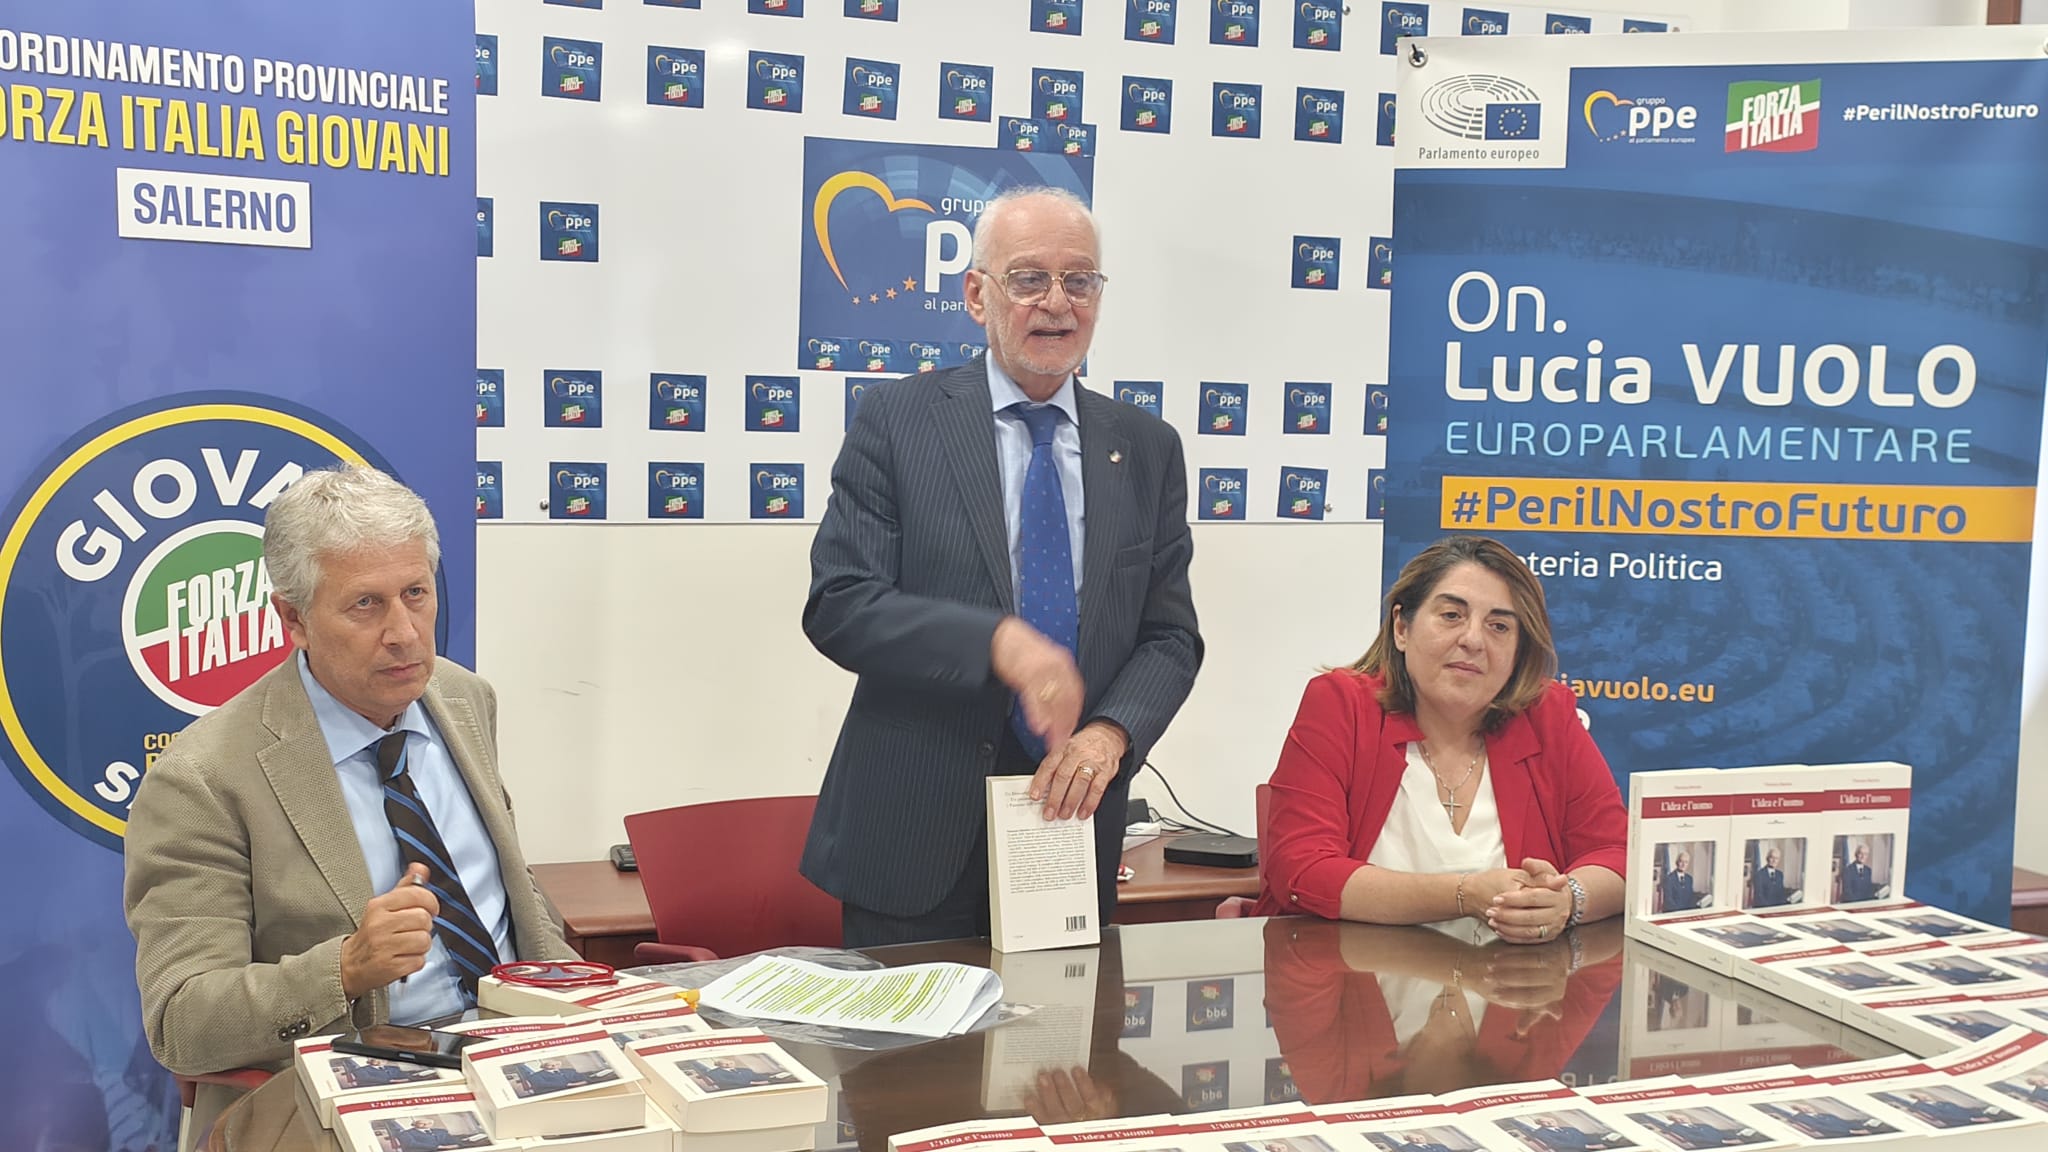 Alla sede del PPE a Salerno, presentato il libro di Vincenzo Moretto “L’idea e l’uomo”. Lucia Vuolo: “Nascerà la scuola di politica giovanile dedicata ad Enzo Fasano”